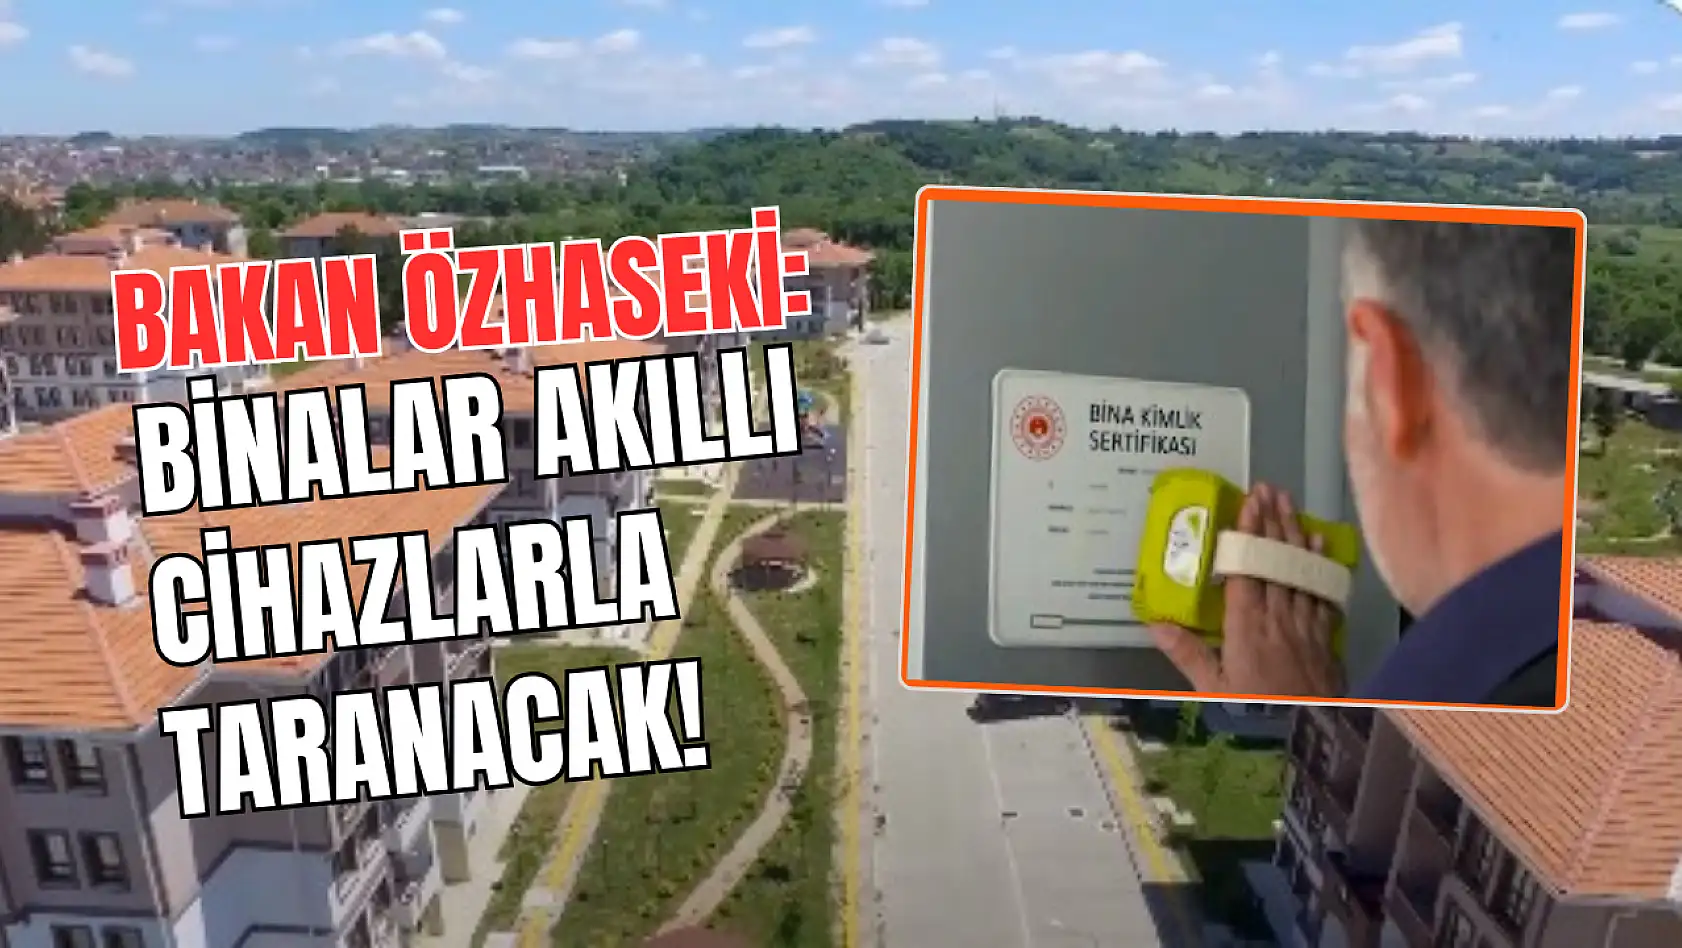 Bakan Özhaseki: Binalar akıllı cihazlarla taranacak!